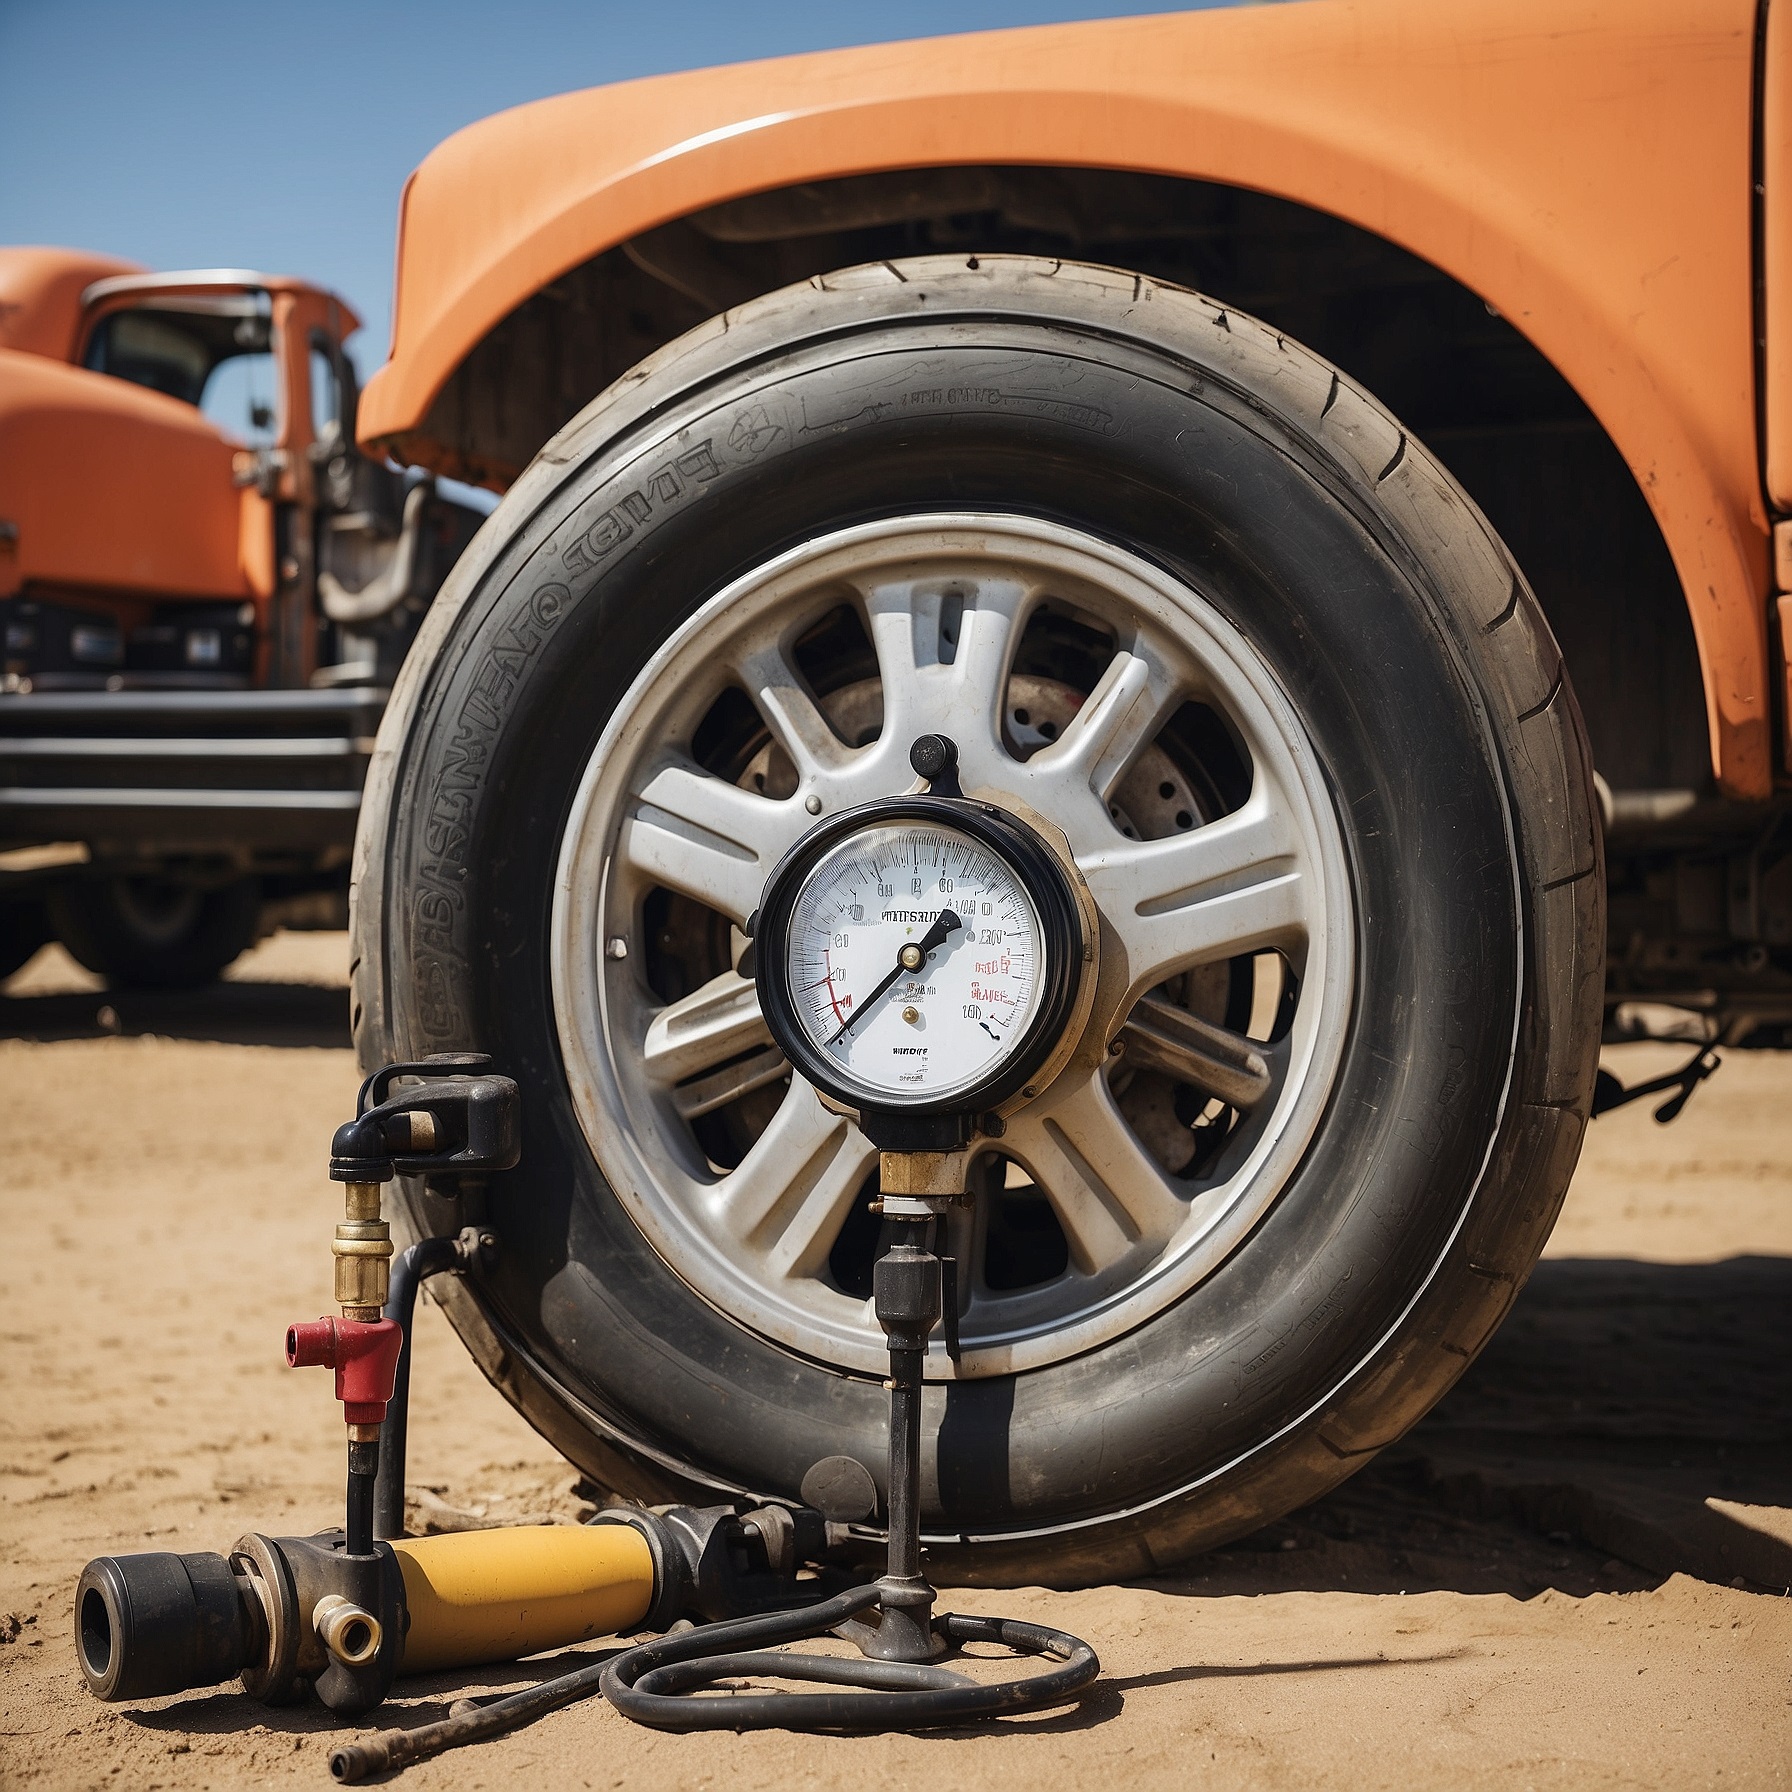 Какое давление должно быть в грузовых шинах? Таблица оптимального давления для грузовых автомобилей